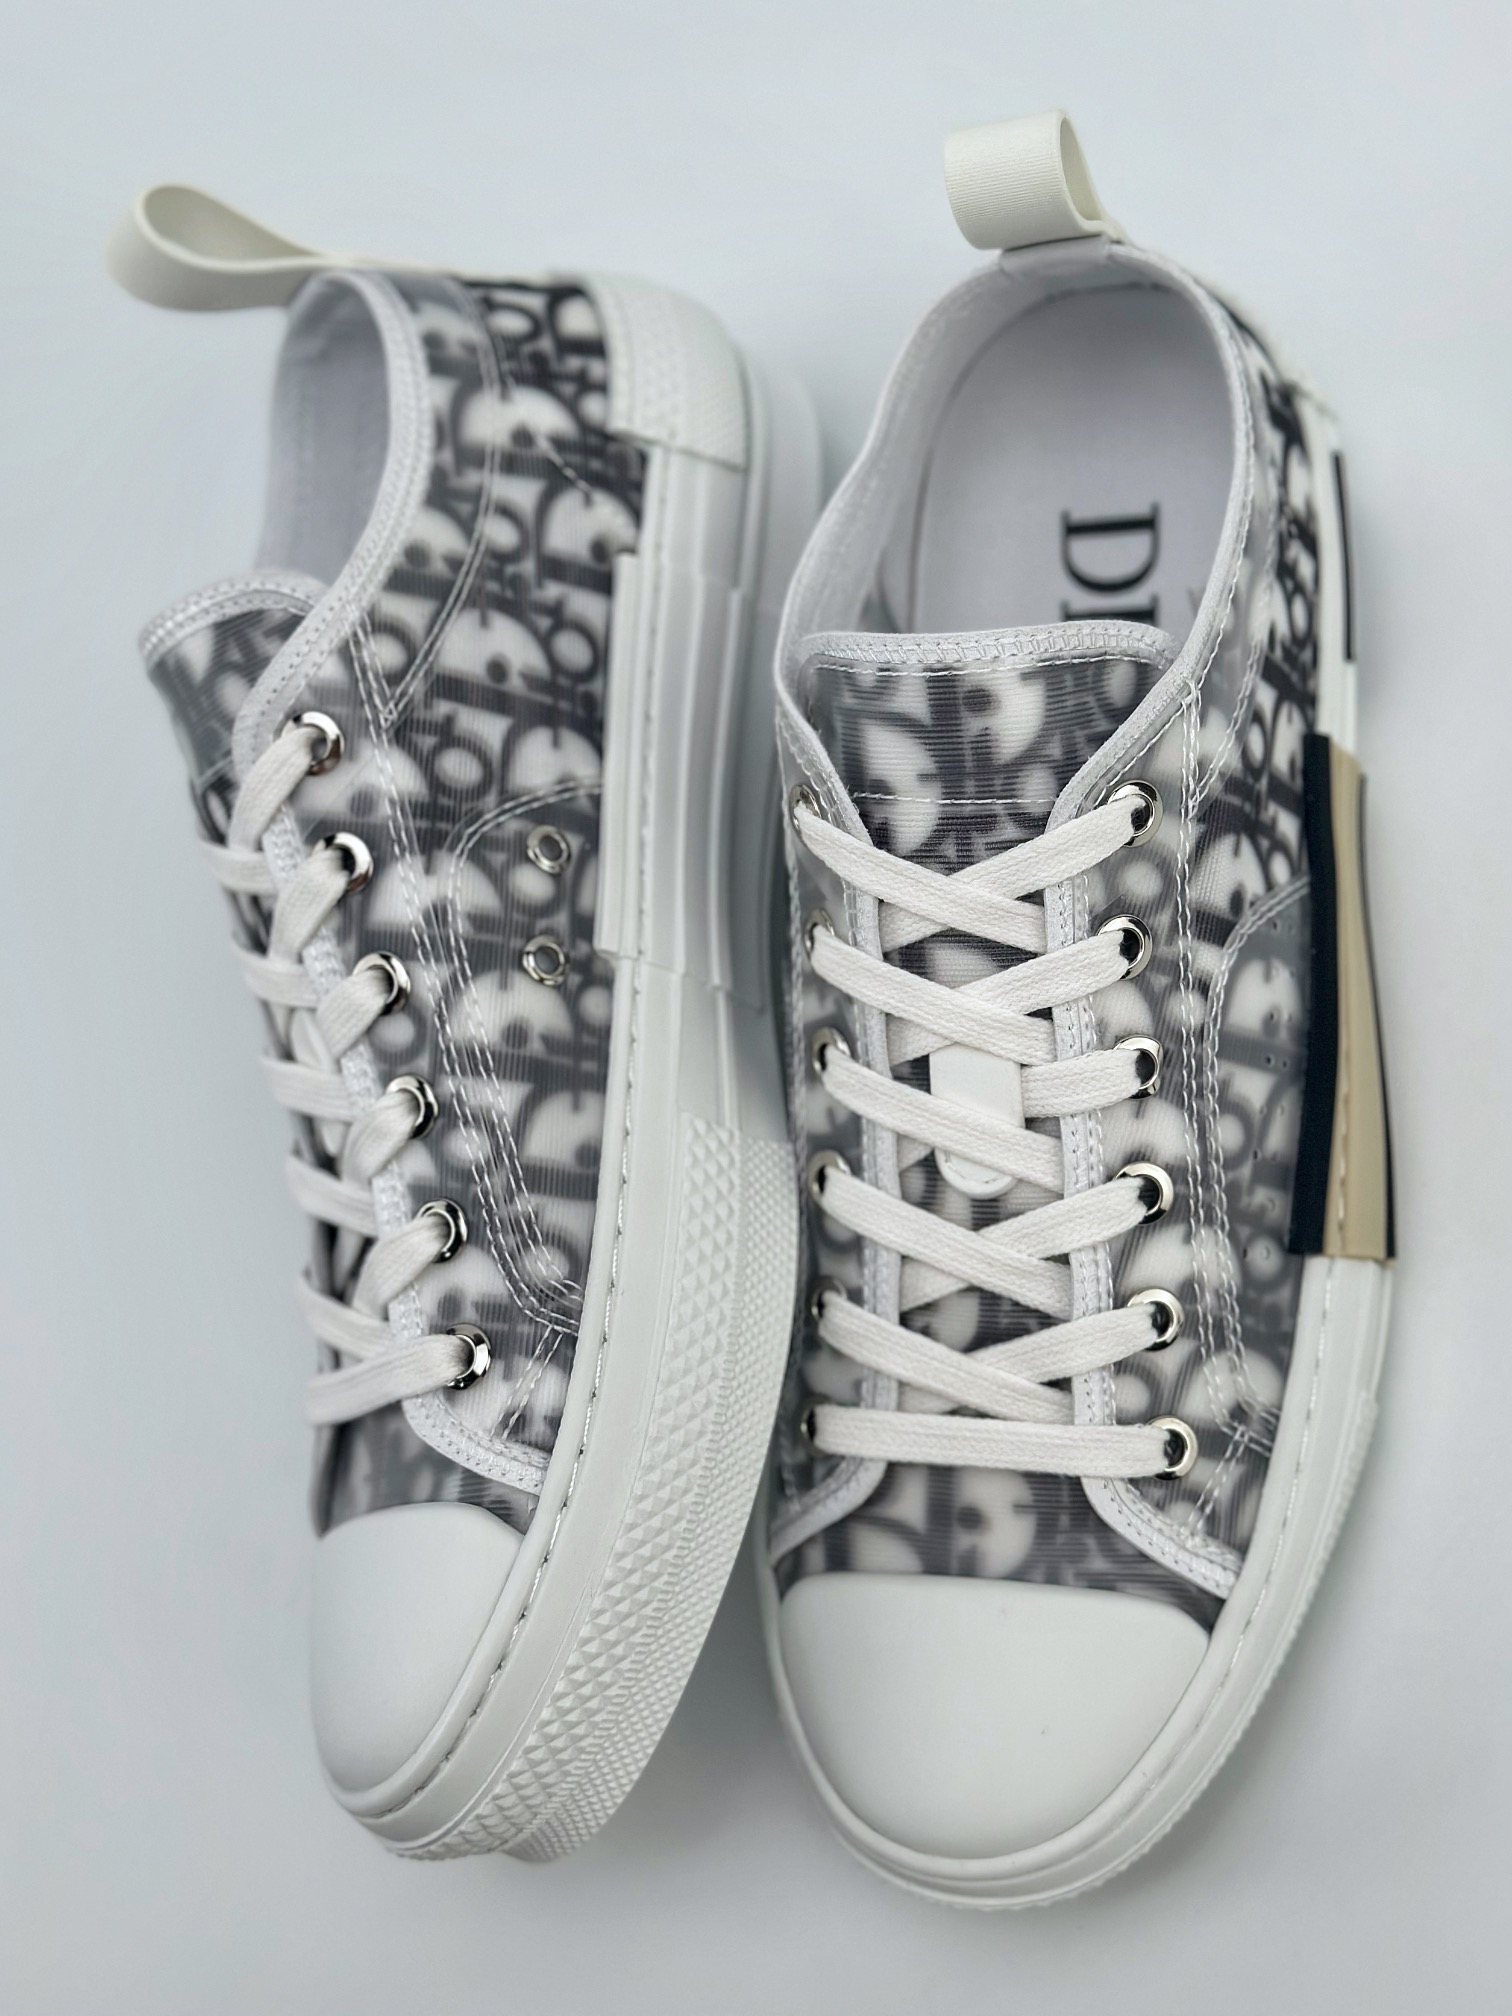 New arrival Dior B23 Oblique Top Sneakers Dior 